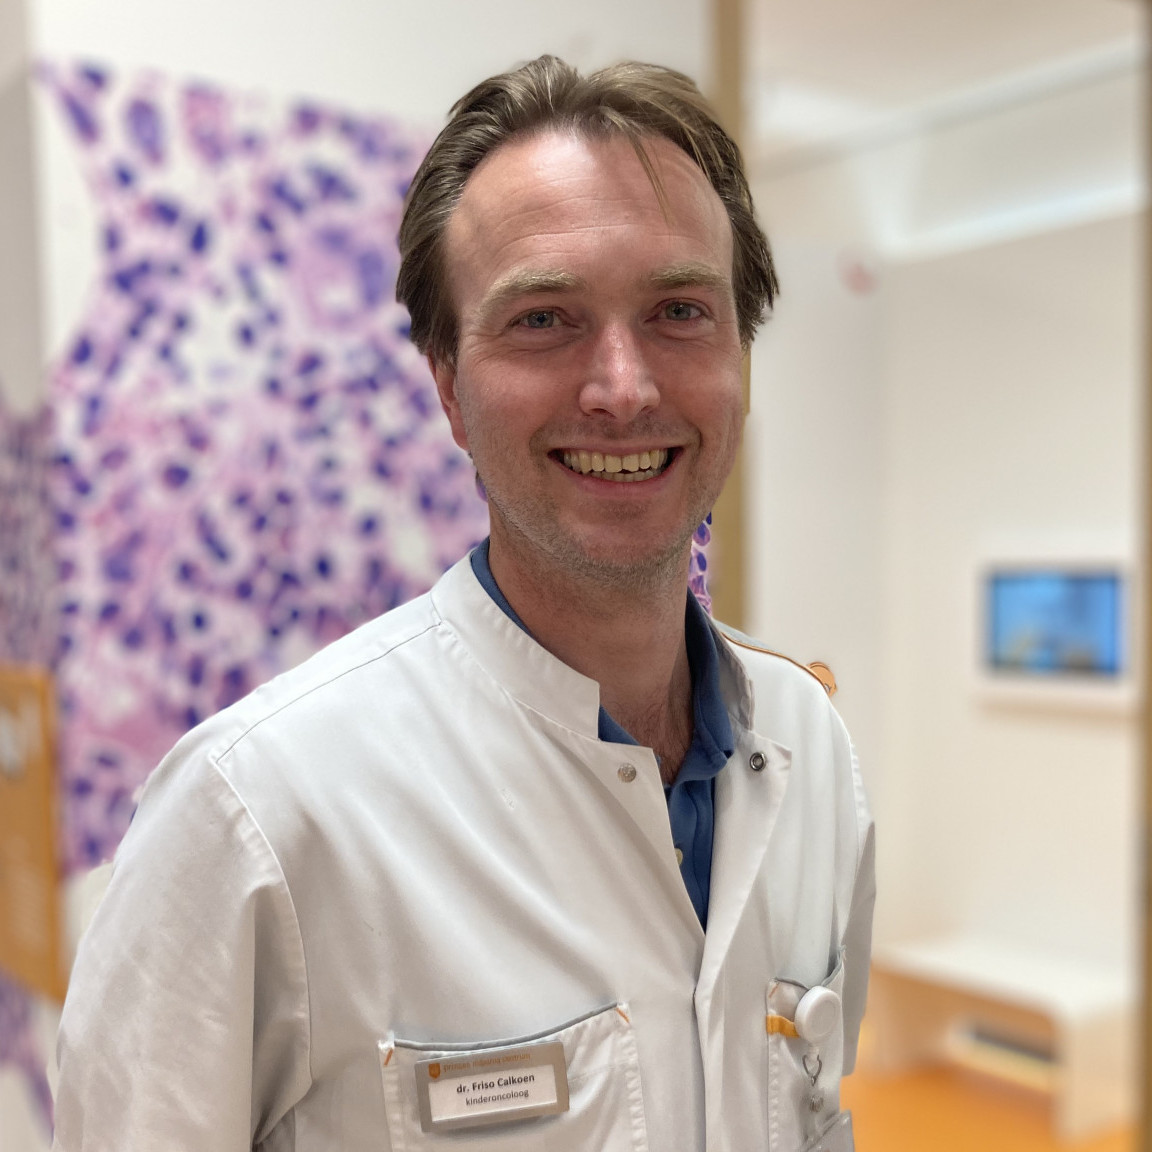 Friso Calkoen ‘Immunotherapie CAR T: van nieuwkomer naar behandeling van de toekomst’